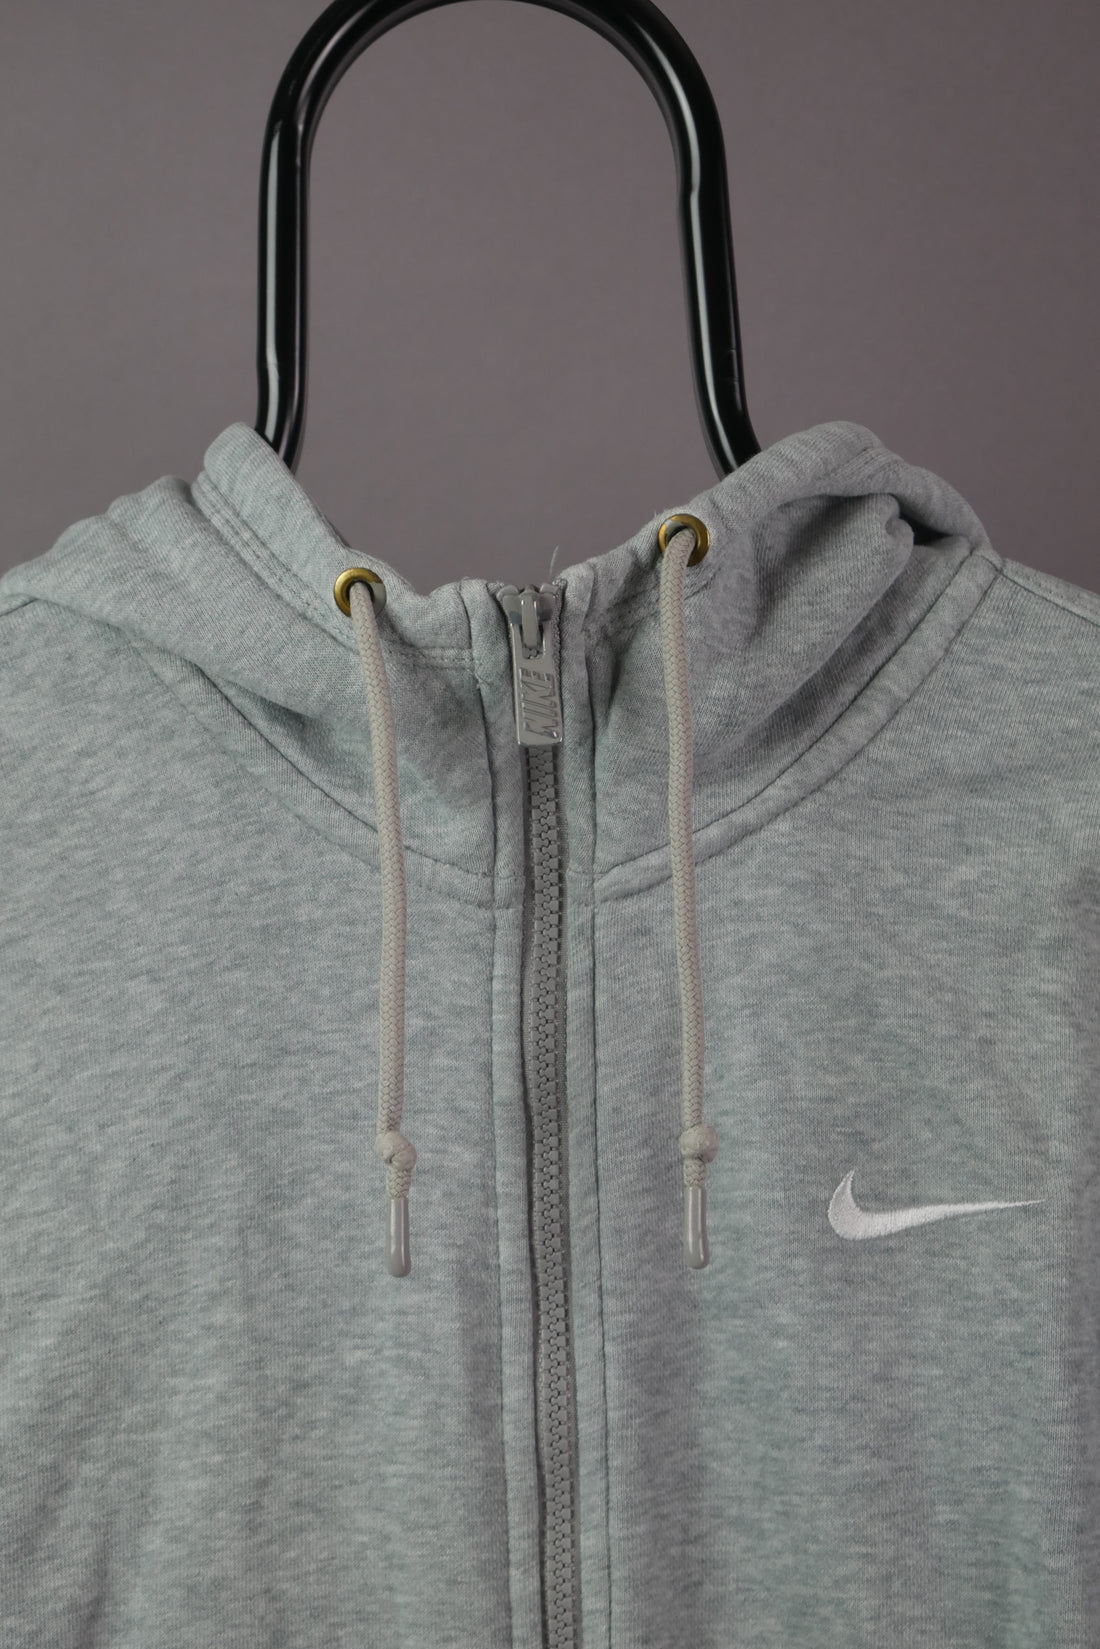 The Nike Full Zip Hoodie (S)